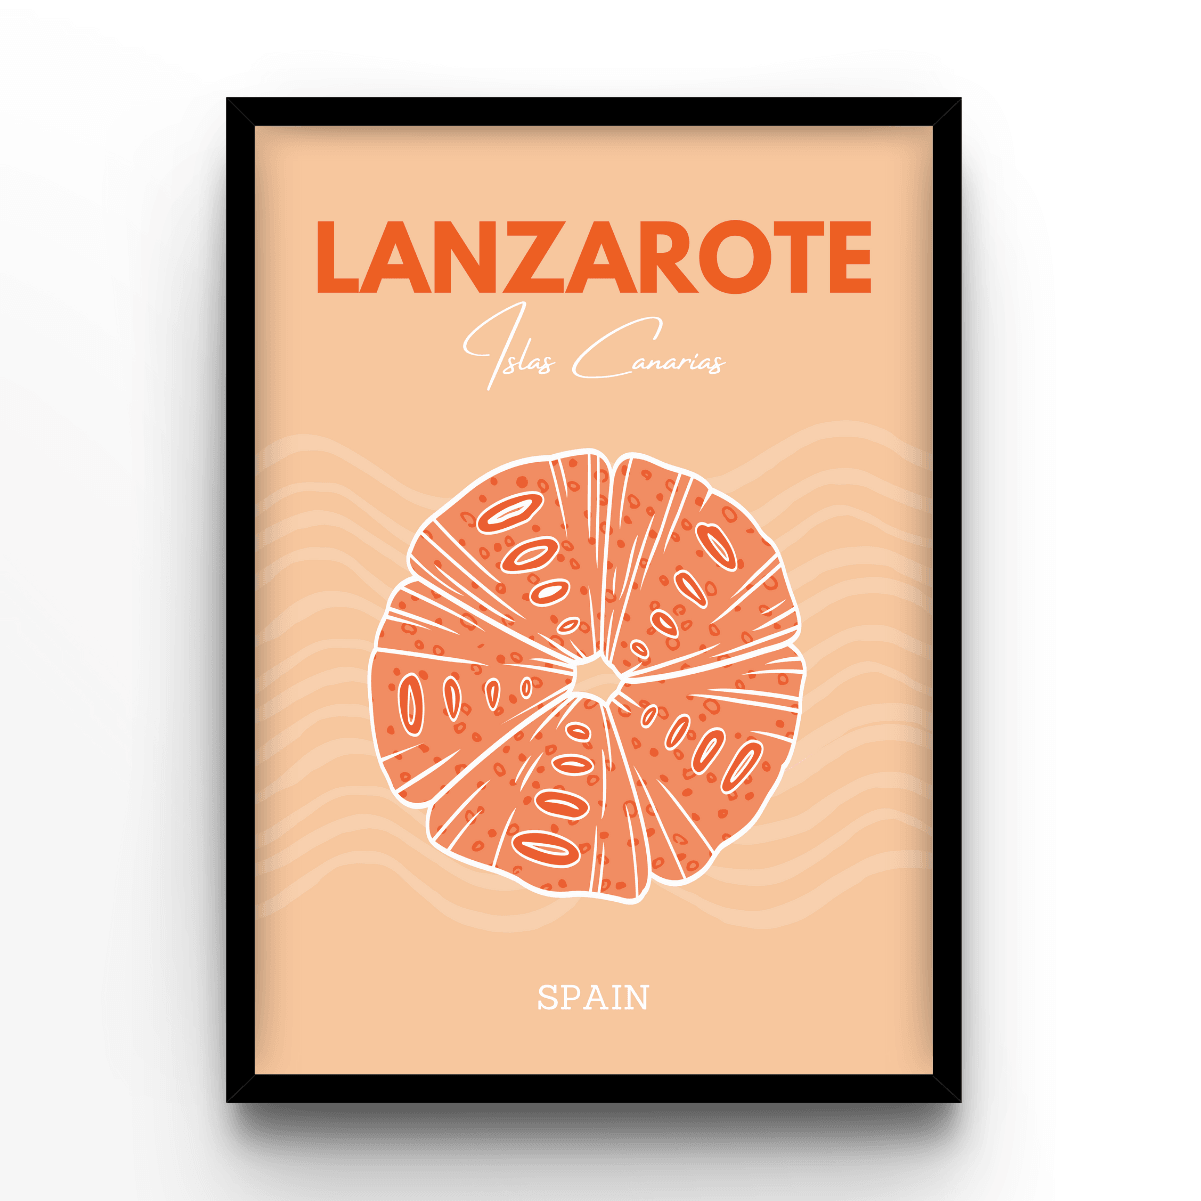 Lanzarote - A4, A3, A2 Posters Base - Poster Print Shop / Art Prints / PostersBase